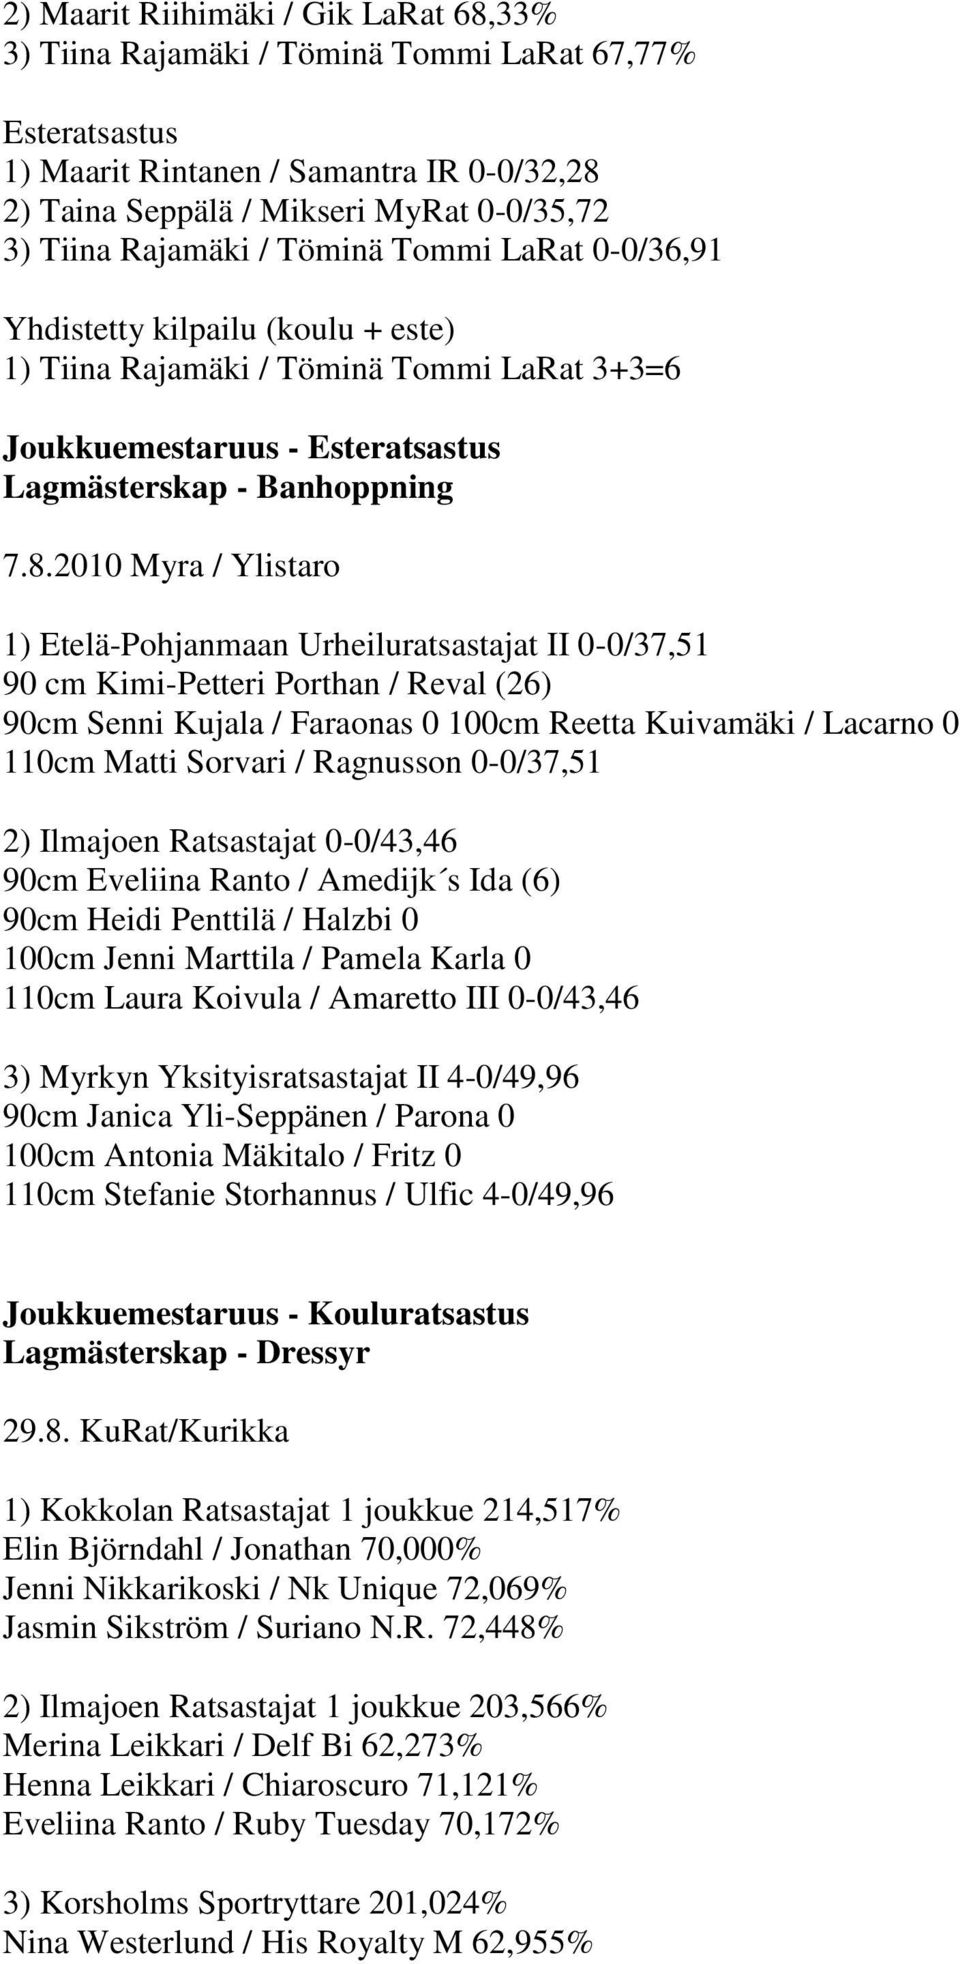 2010 Myra / Ylistaro 1) Etelä-Pohjanmaan Urheiluratsastajat II 0-0/37,51 90 cm Kimi-Petteri Porthan / Reval (26) 90cm Senni Kujala / Faraonas 0 100cm Reetta Kuivamäki / Lacarno 0 110cm Matti Sorvari